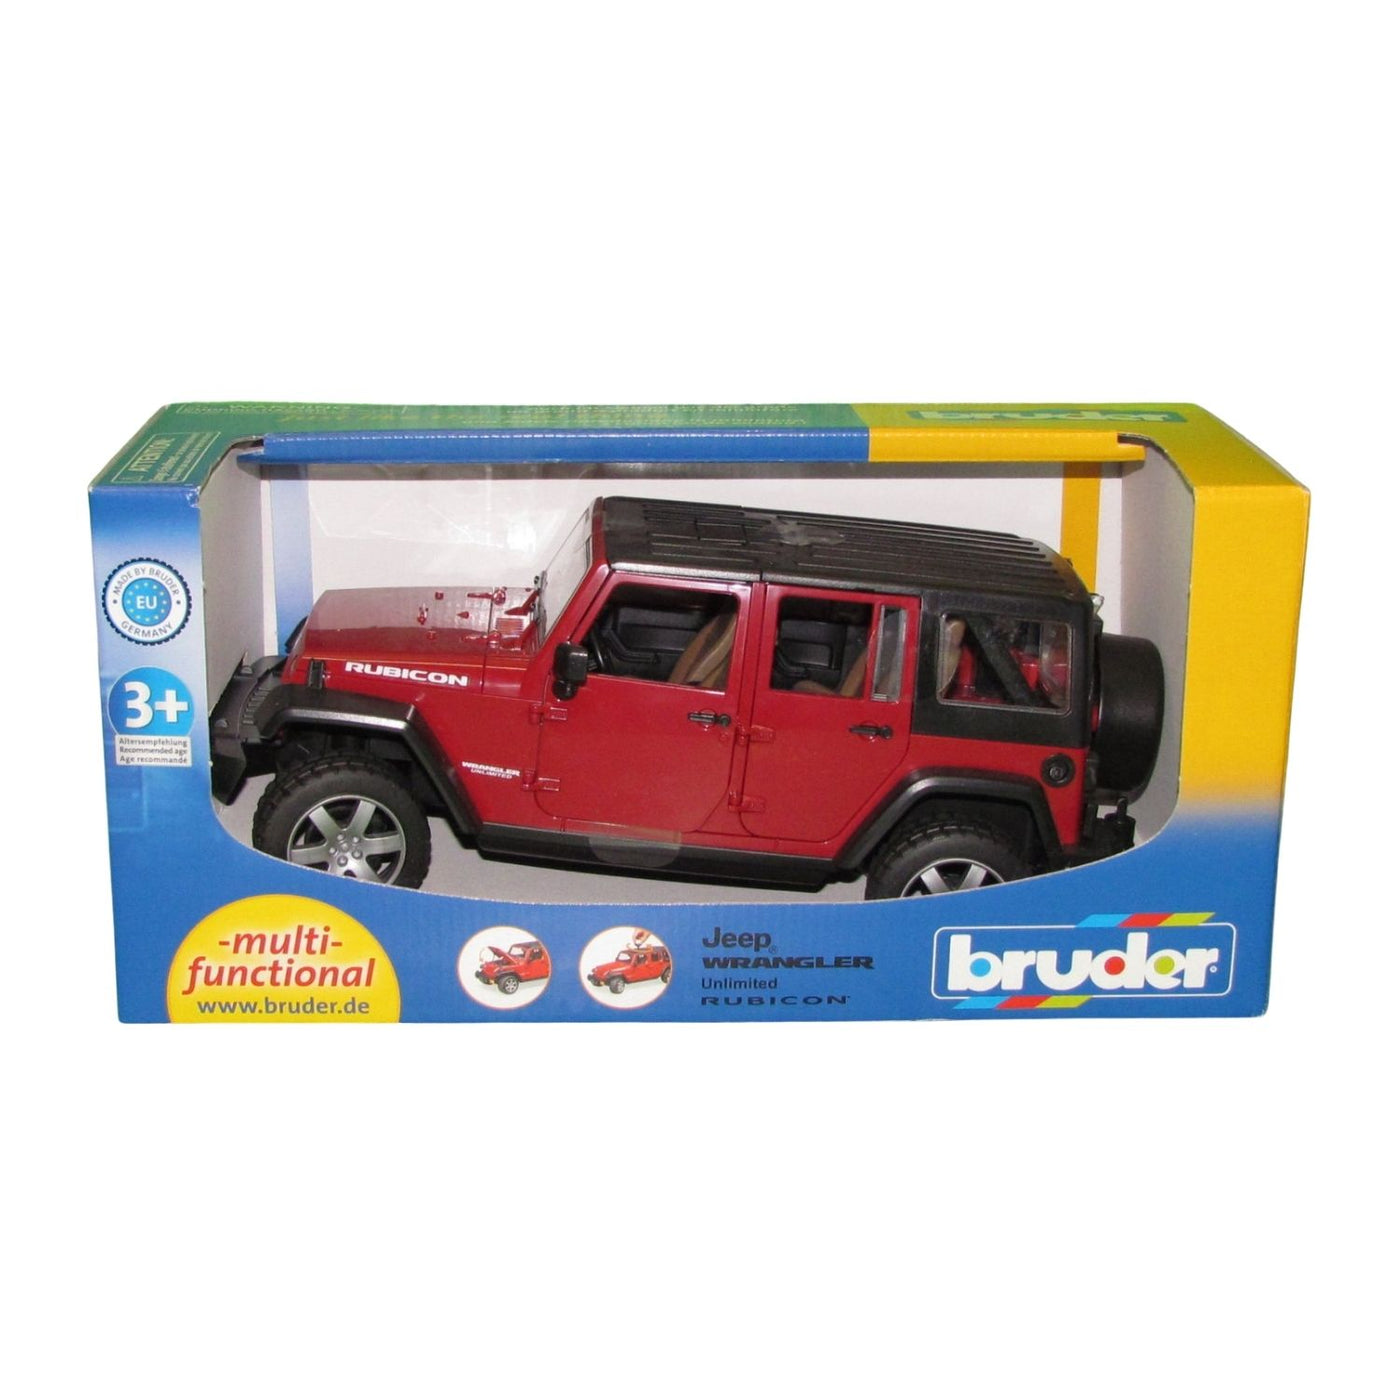 Wrangler SUV Soft Plush Toy Car